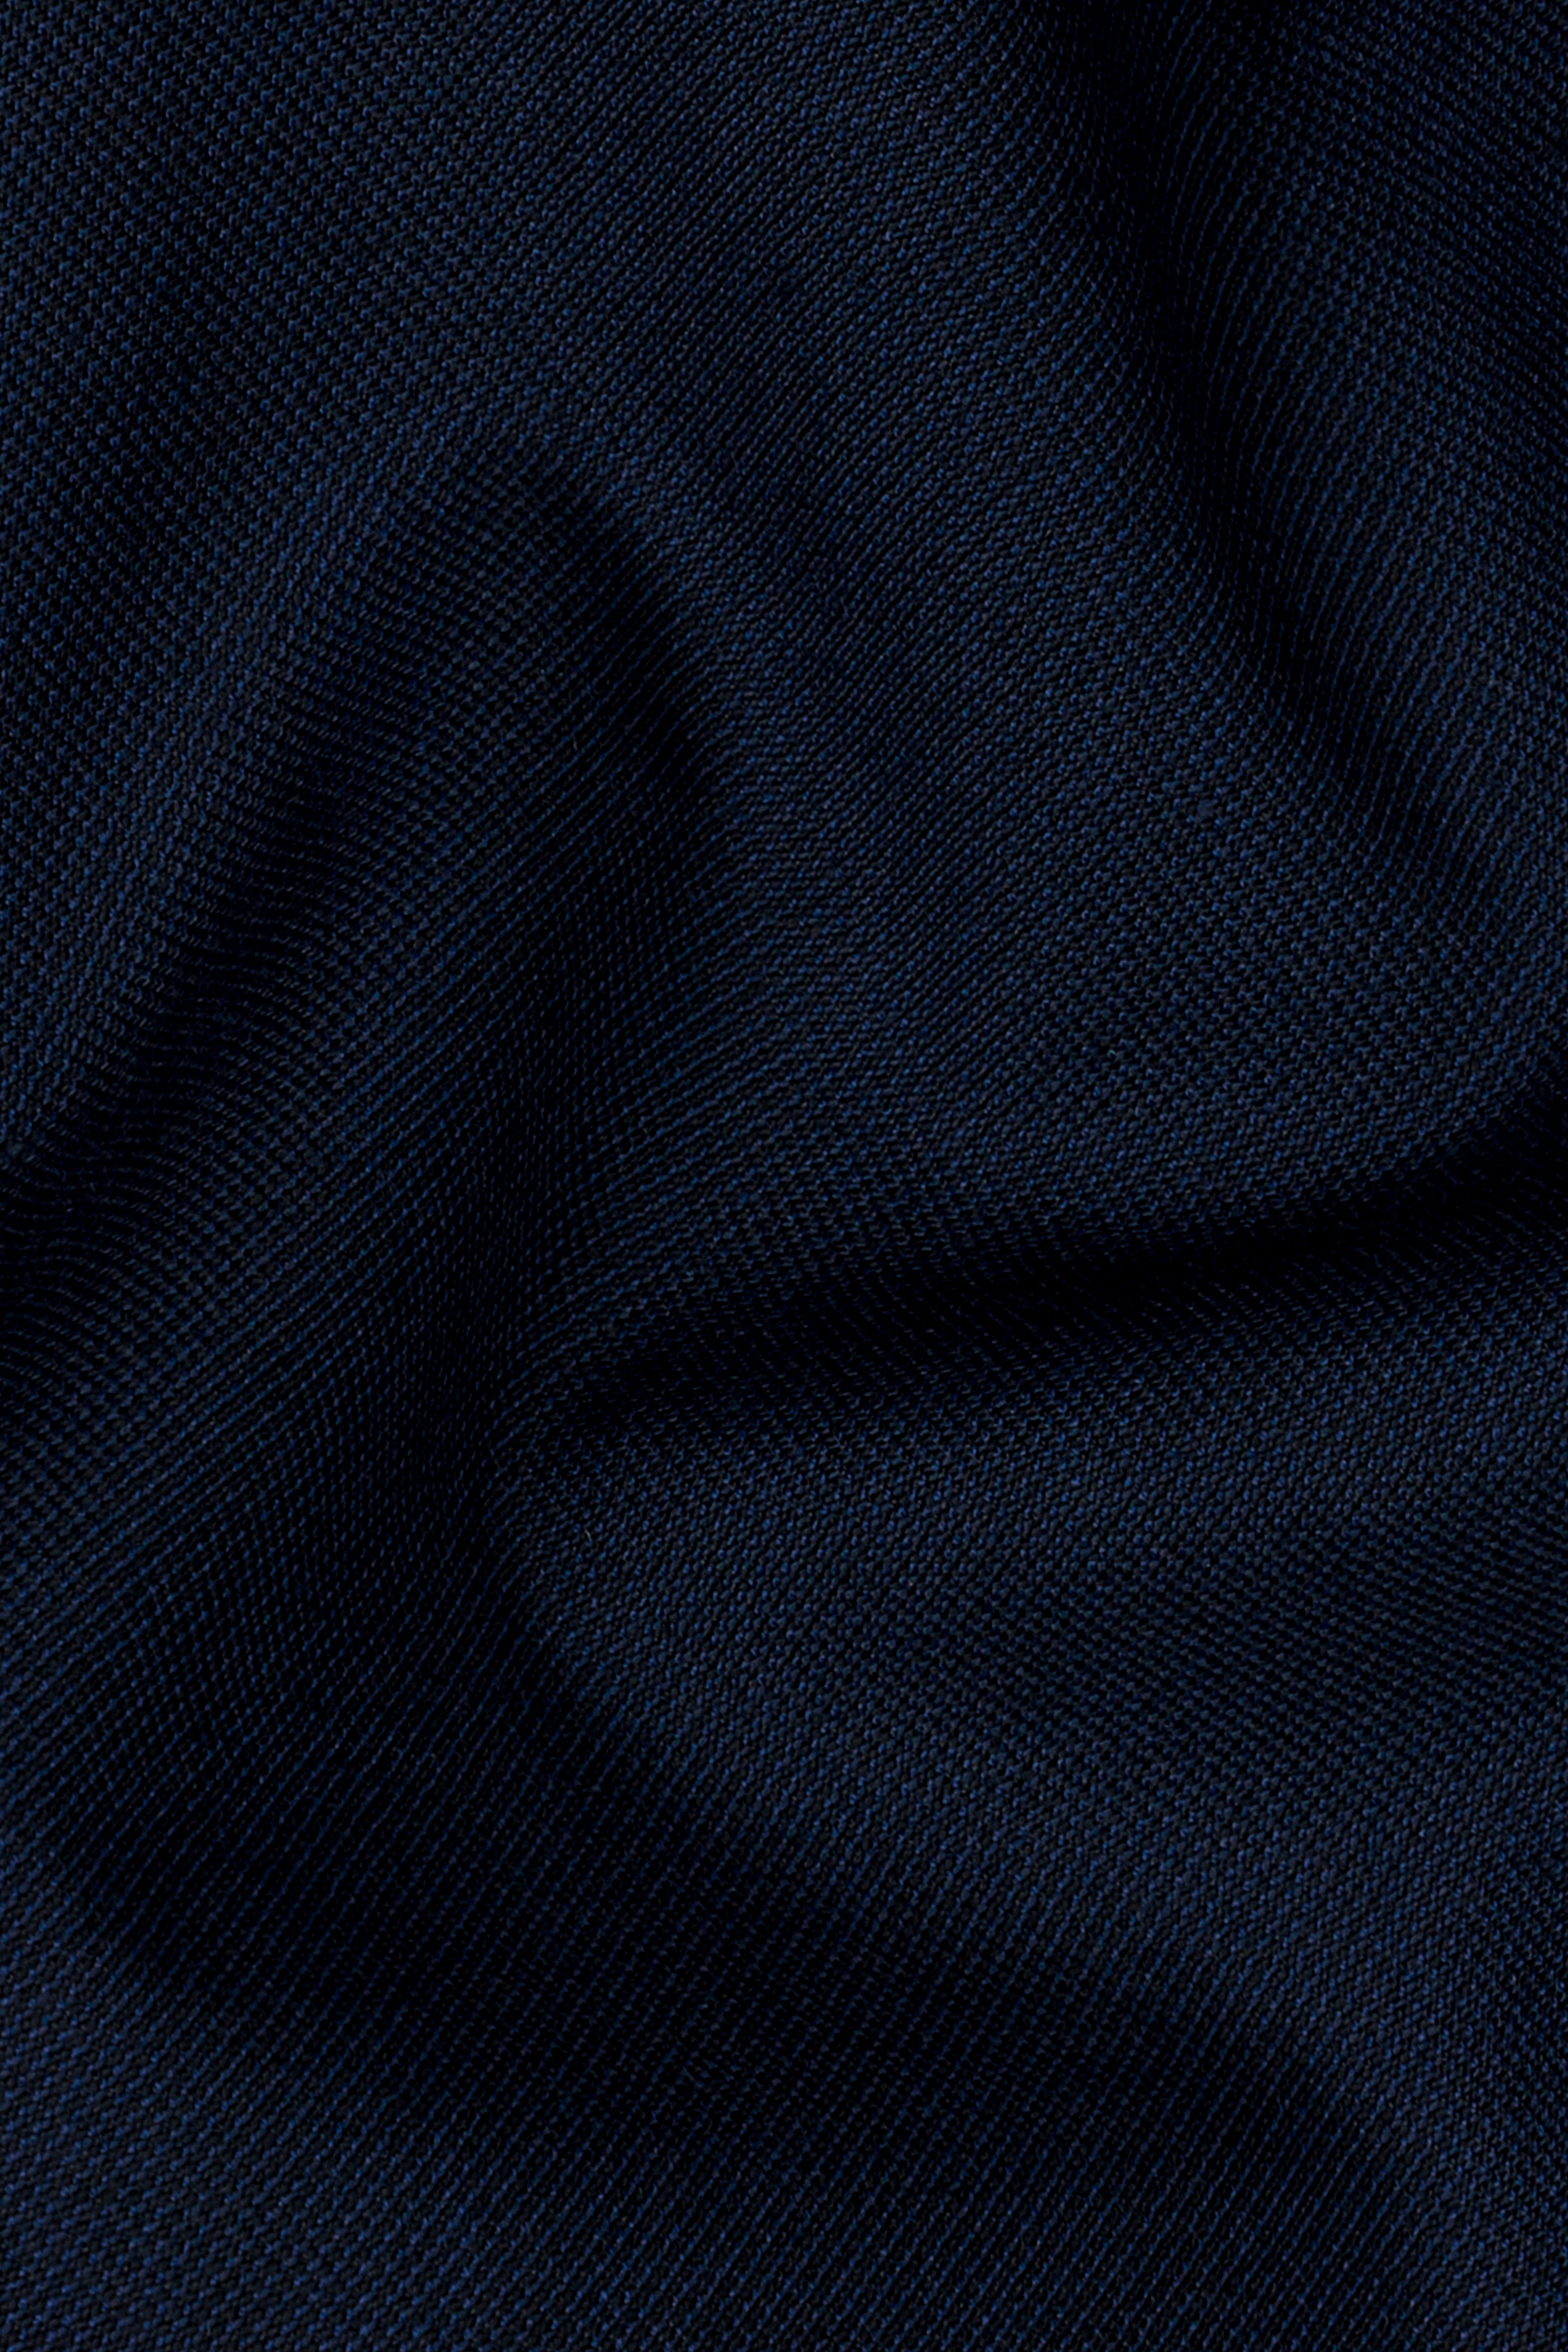 Cinder Blue Wool Rich Pant T2805-28, T2805-30, T2805-32, T2805-34, T2805-36, T2805-38, T2805-40, T2805-42, T2805-44